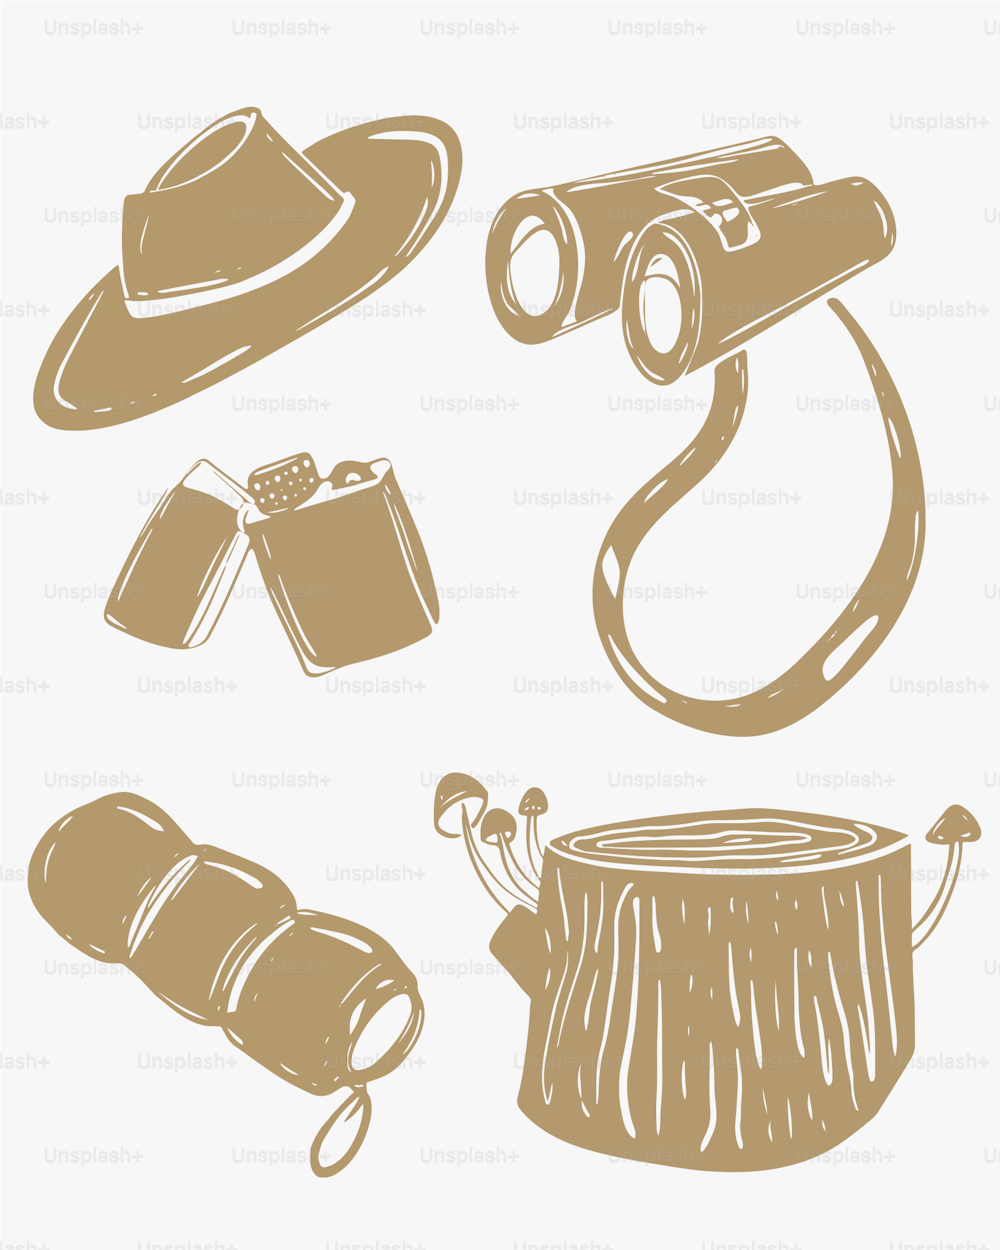 eine Zeichnung eines Hutes, einer Kamera und anderer Gegenstände